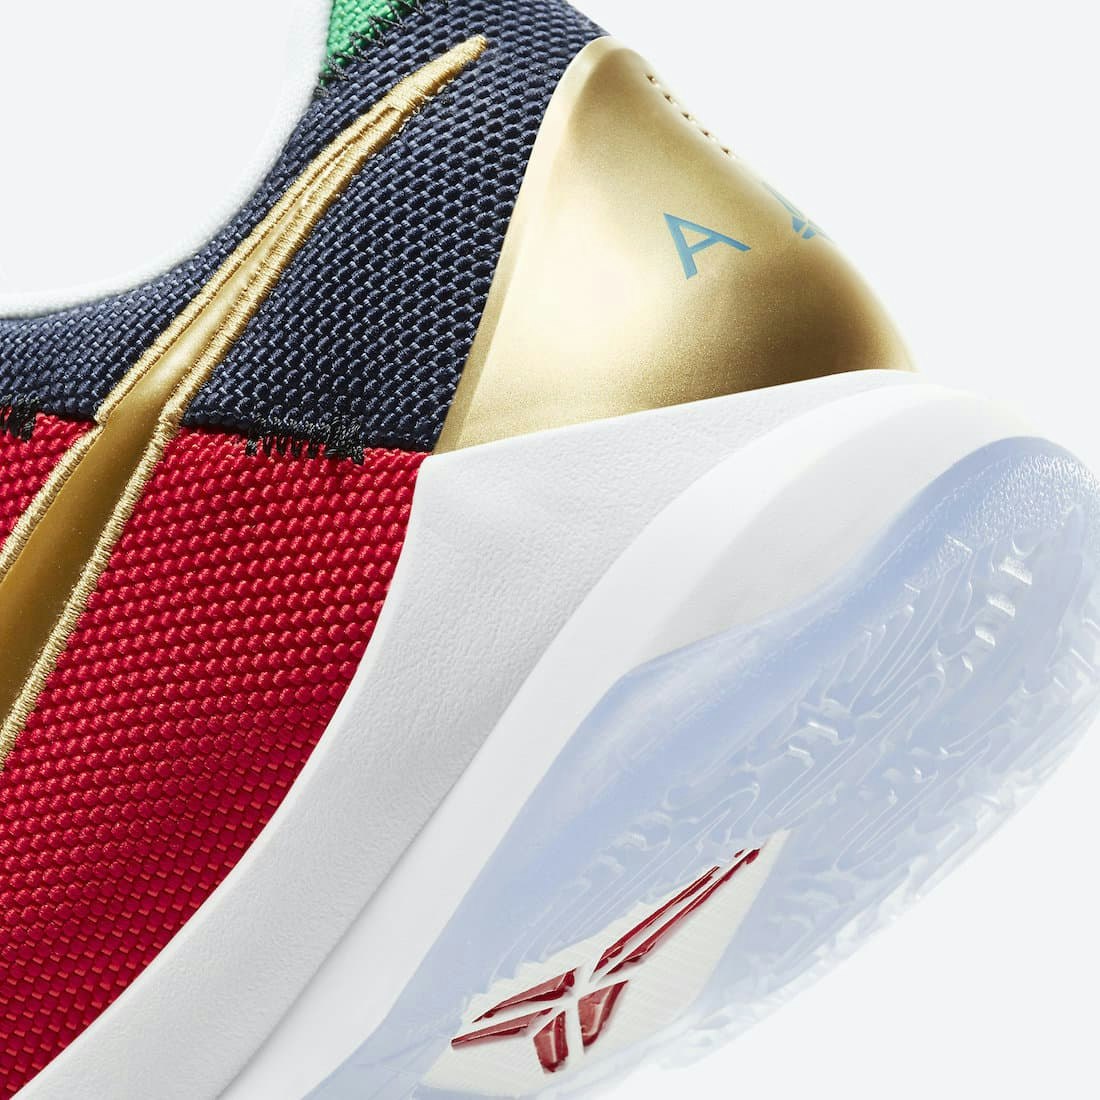 Undefeated x Nike Kobe 5 Protro “What If” 